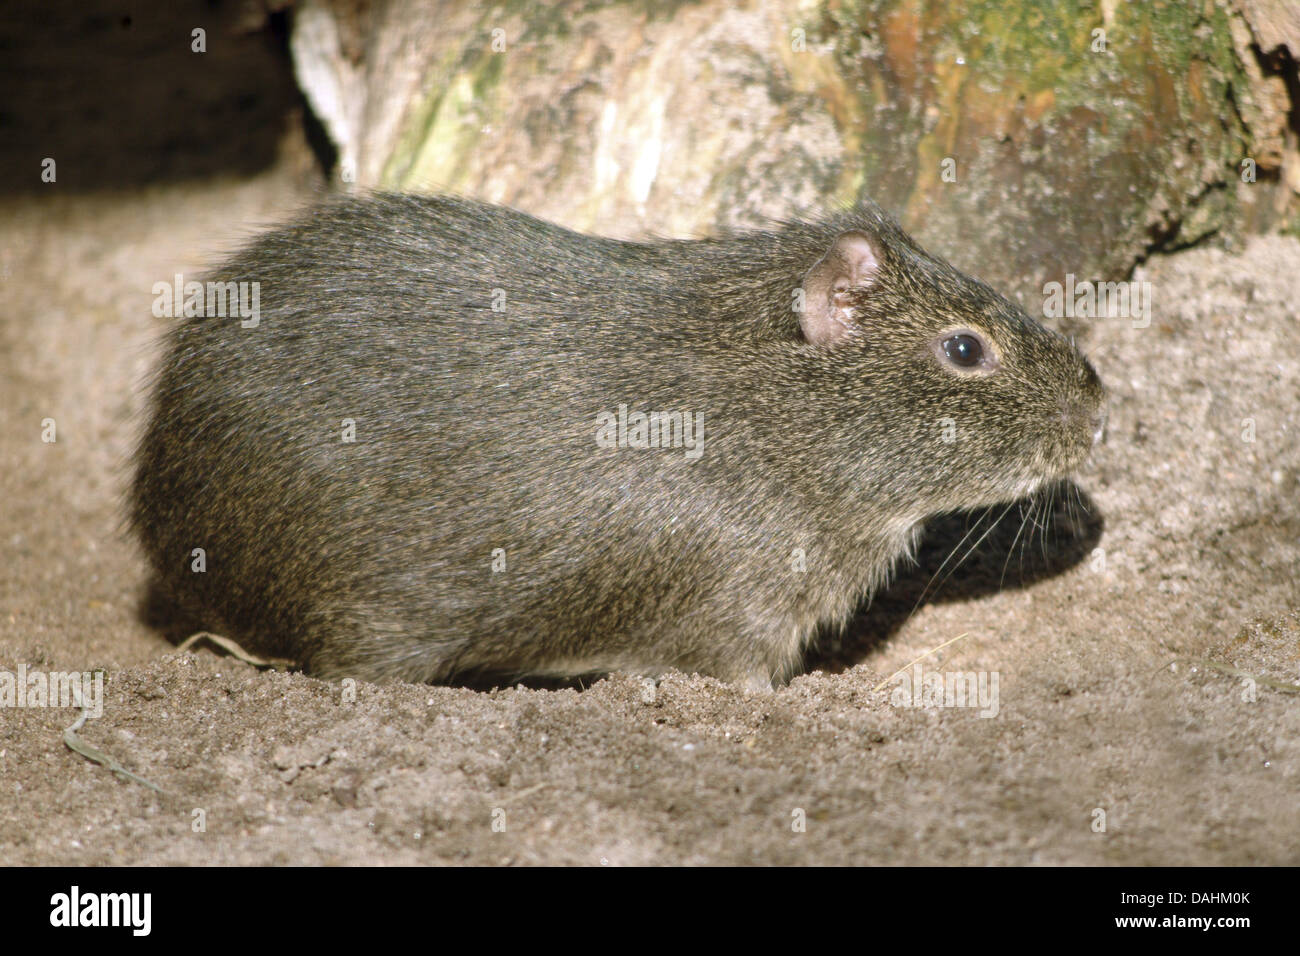 brazilian guinea pig, cavia aperea Stock Photo